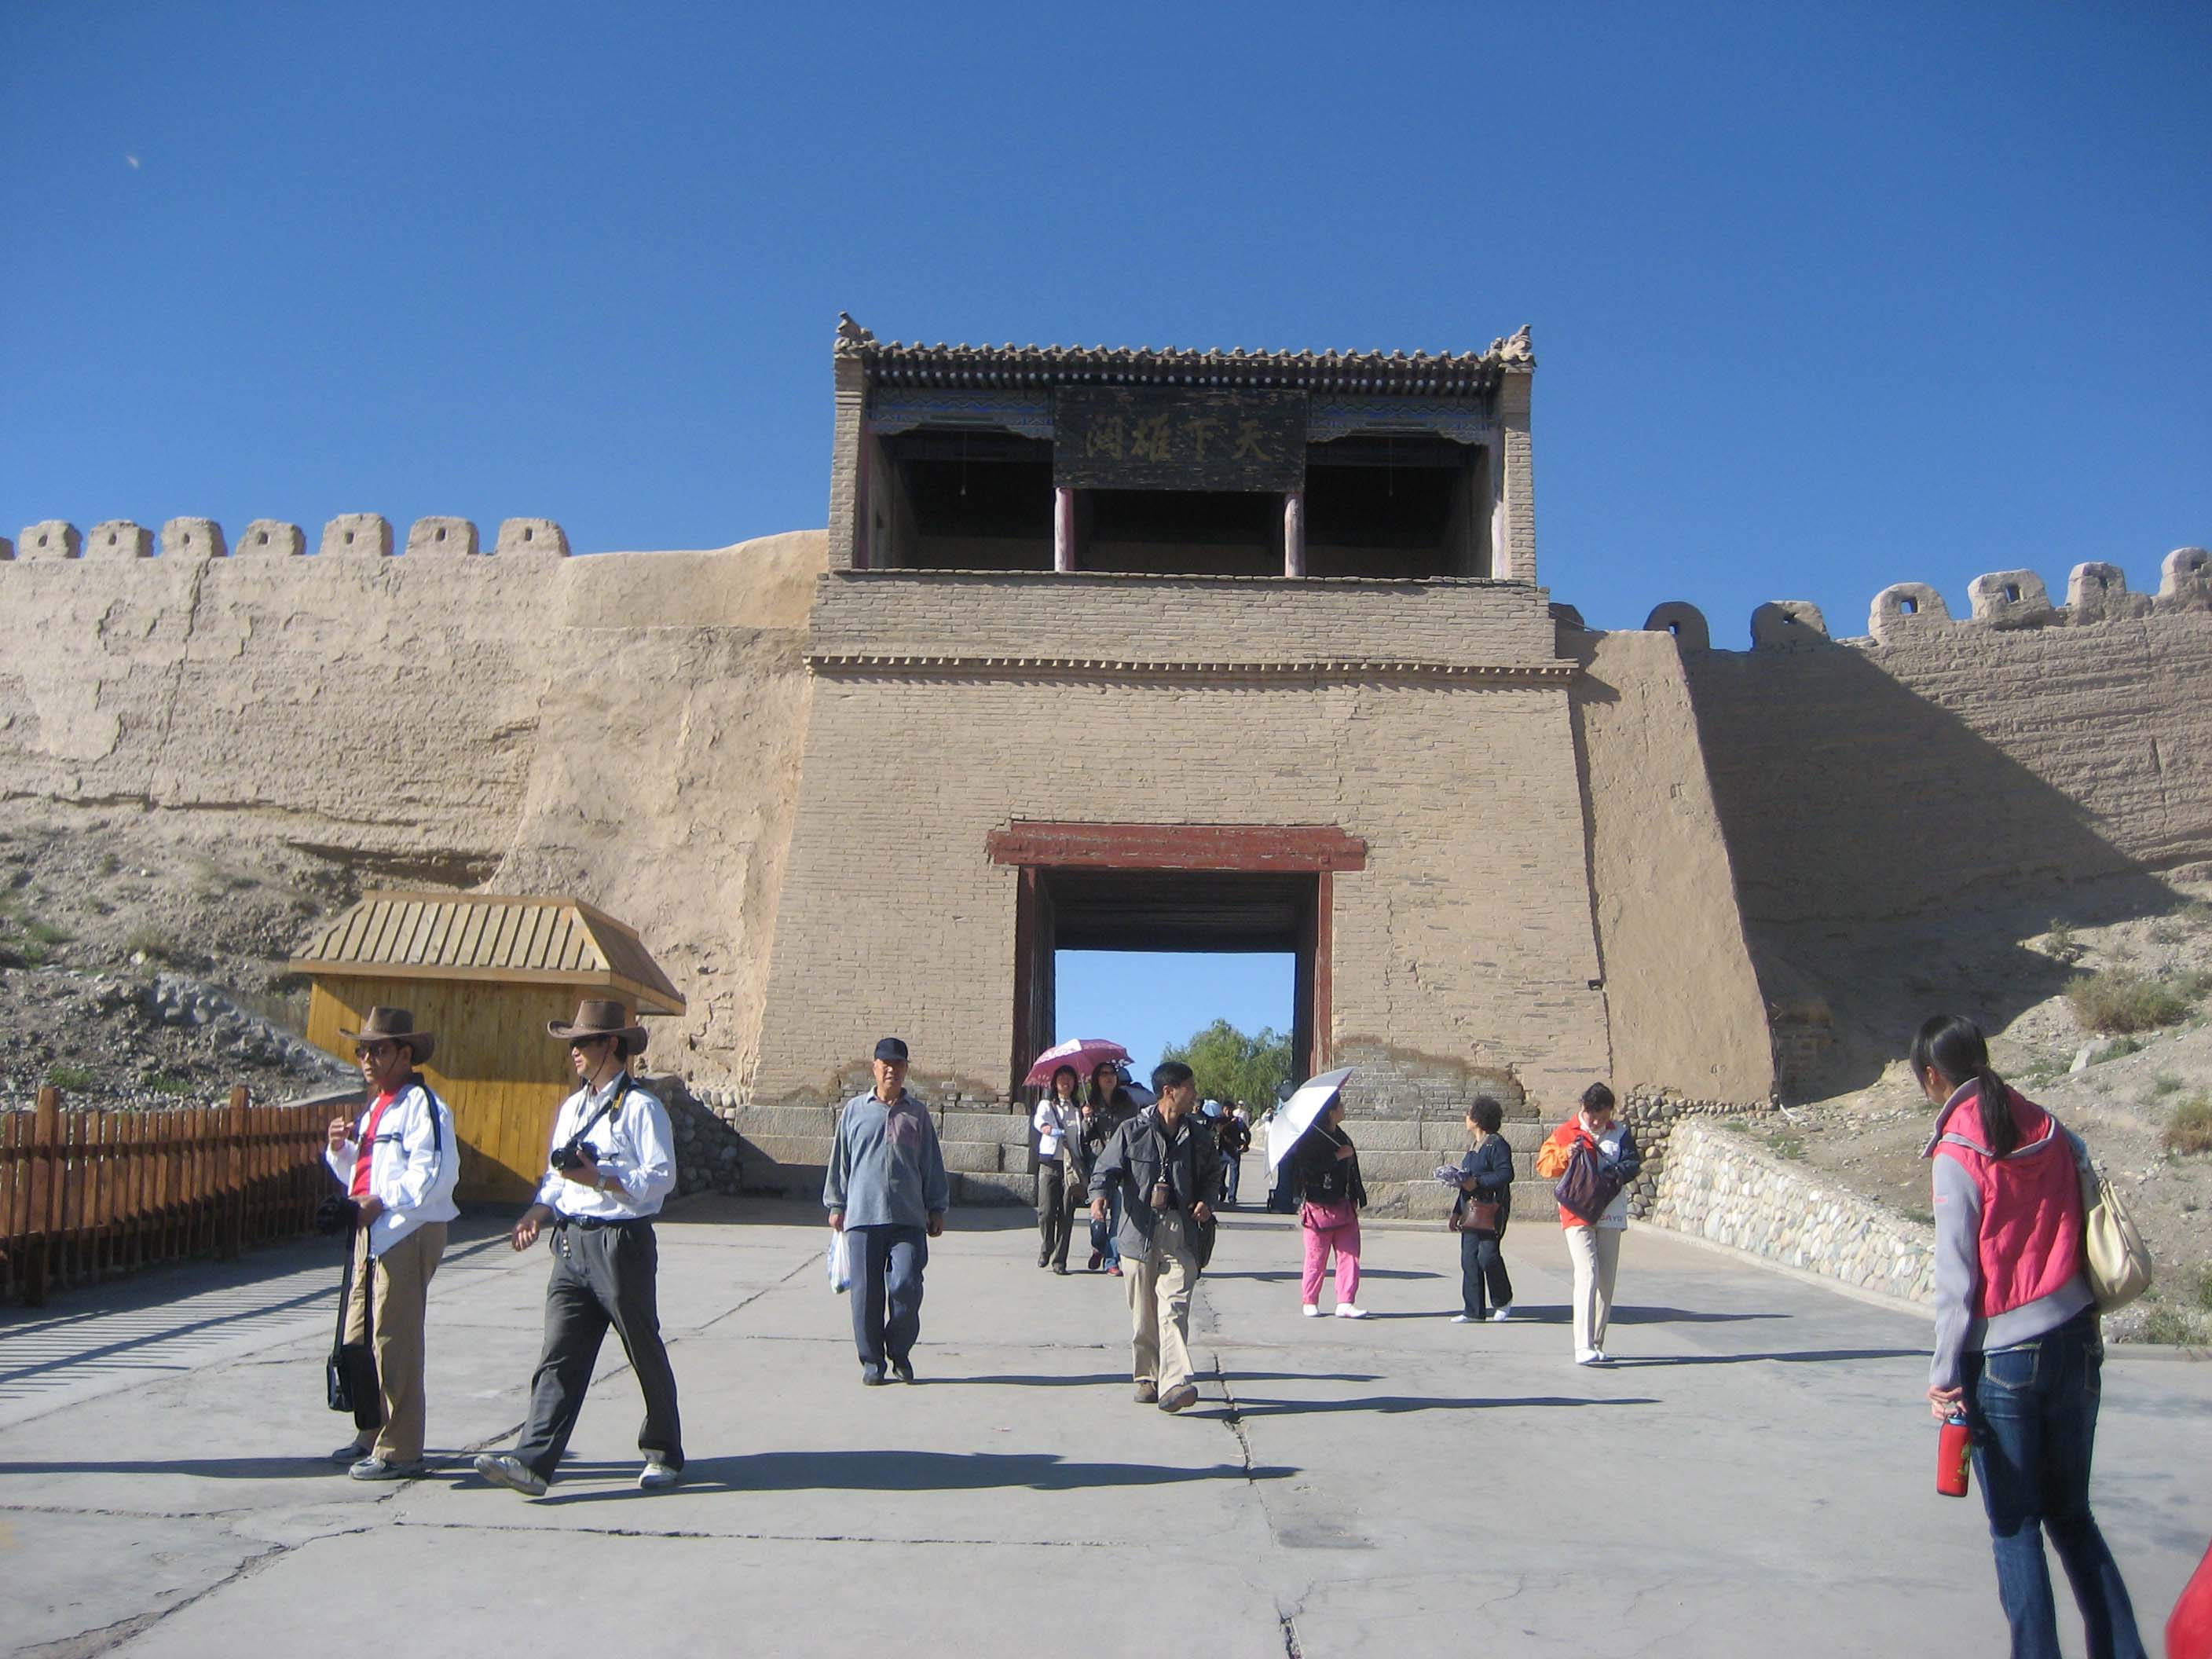 Jiayuguan Wall Gate - Great Wall of China